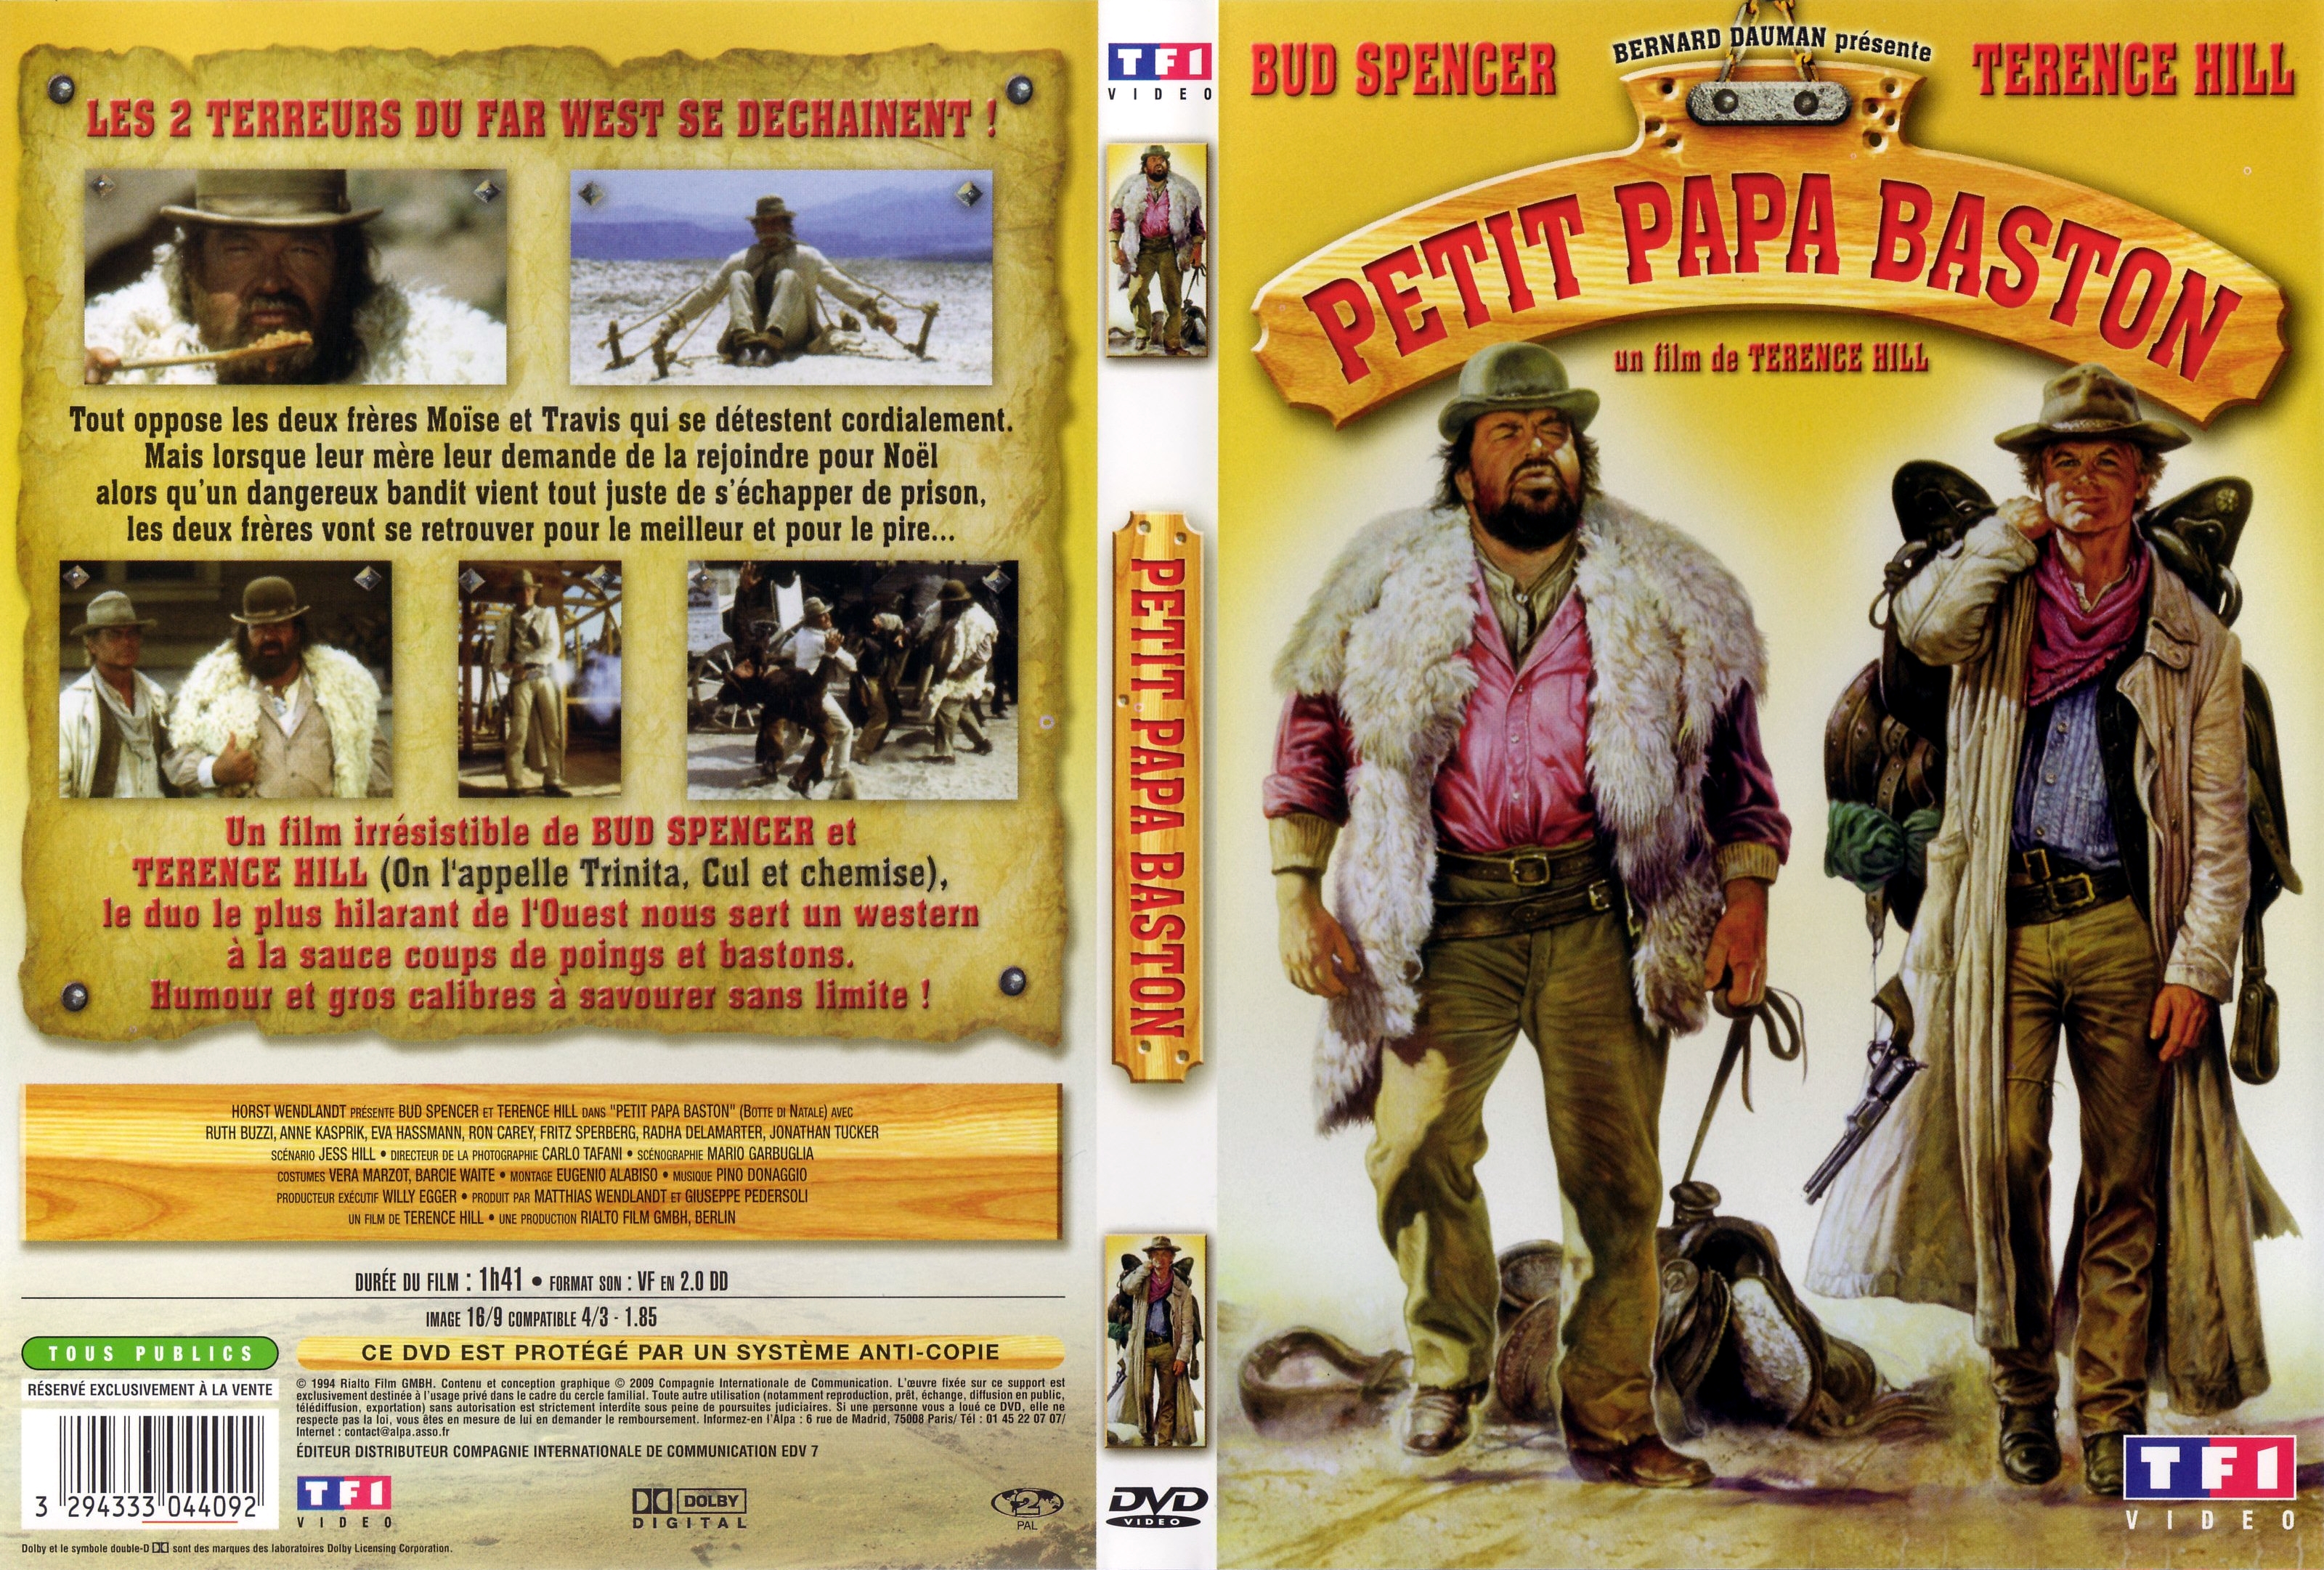 Jaquette DVD Petit papa baston